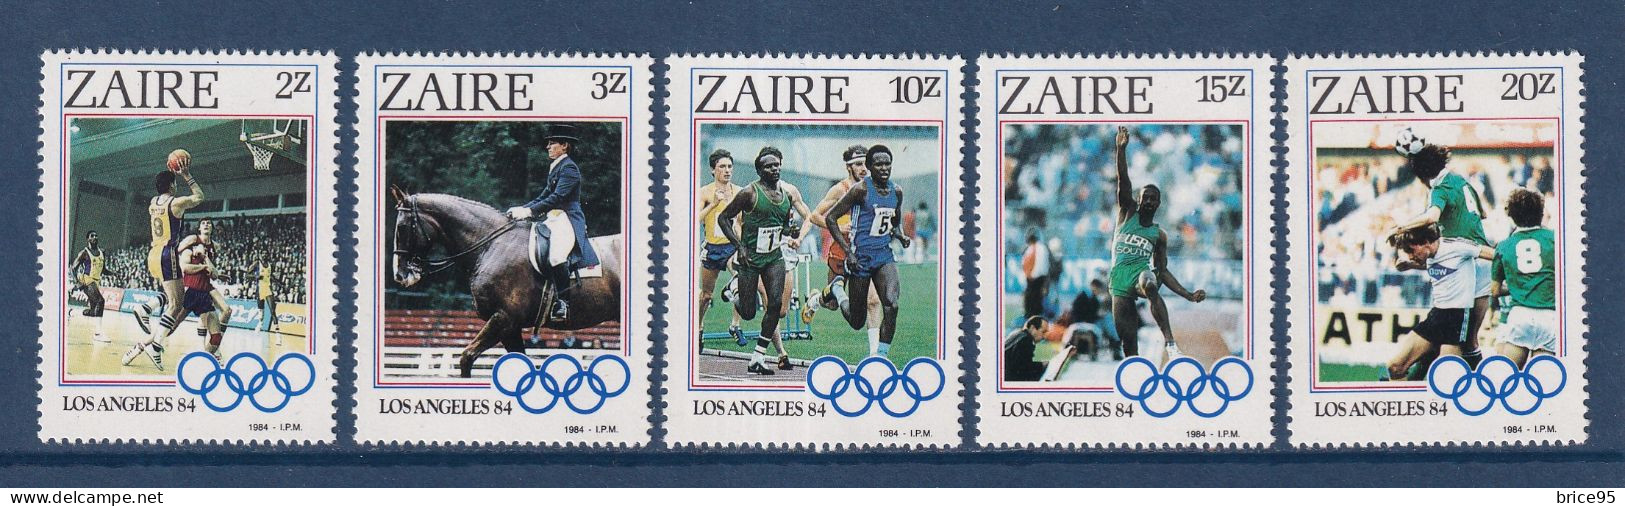 Zaïre - YT N° 1169 à 1173 ** - Neuf Sans Charnière - 1984 - Unused Stamps